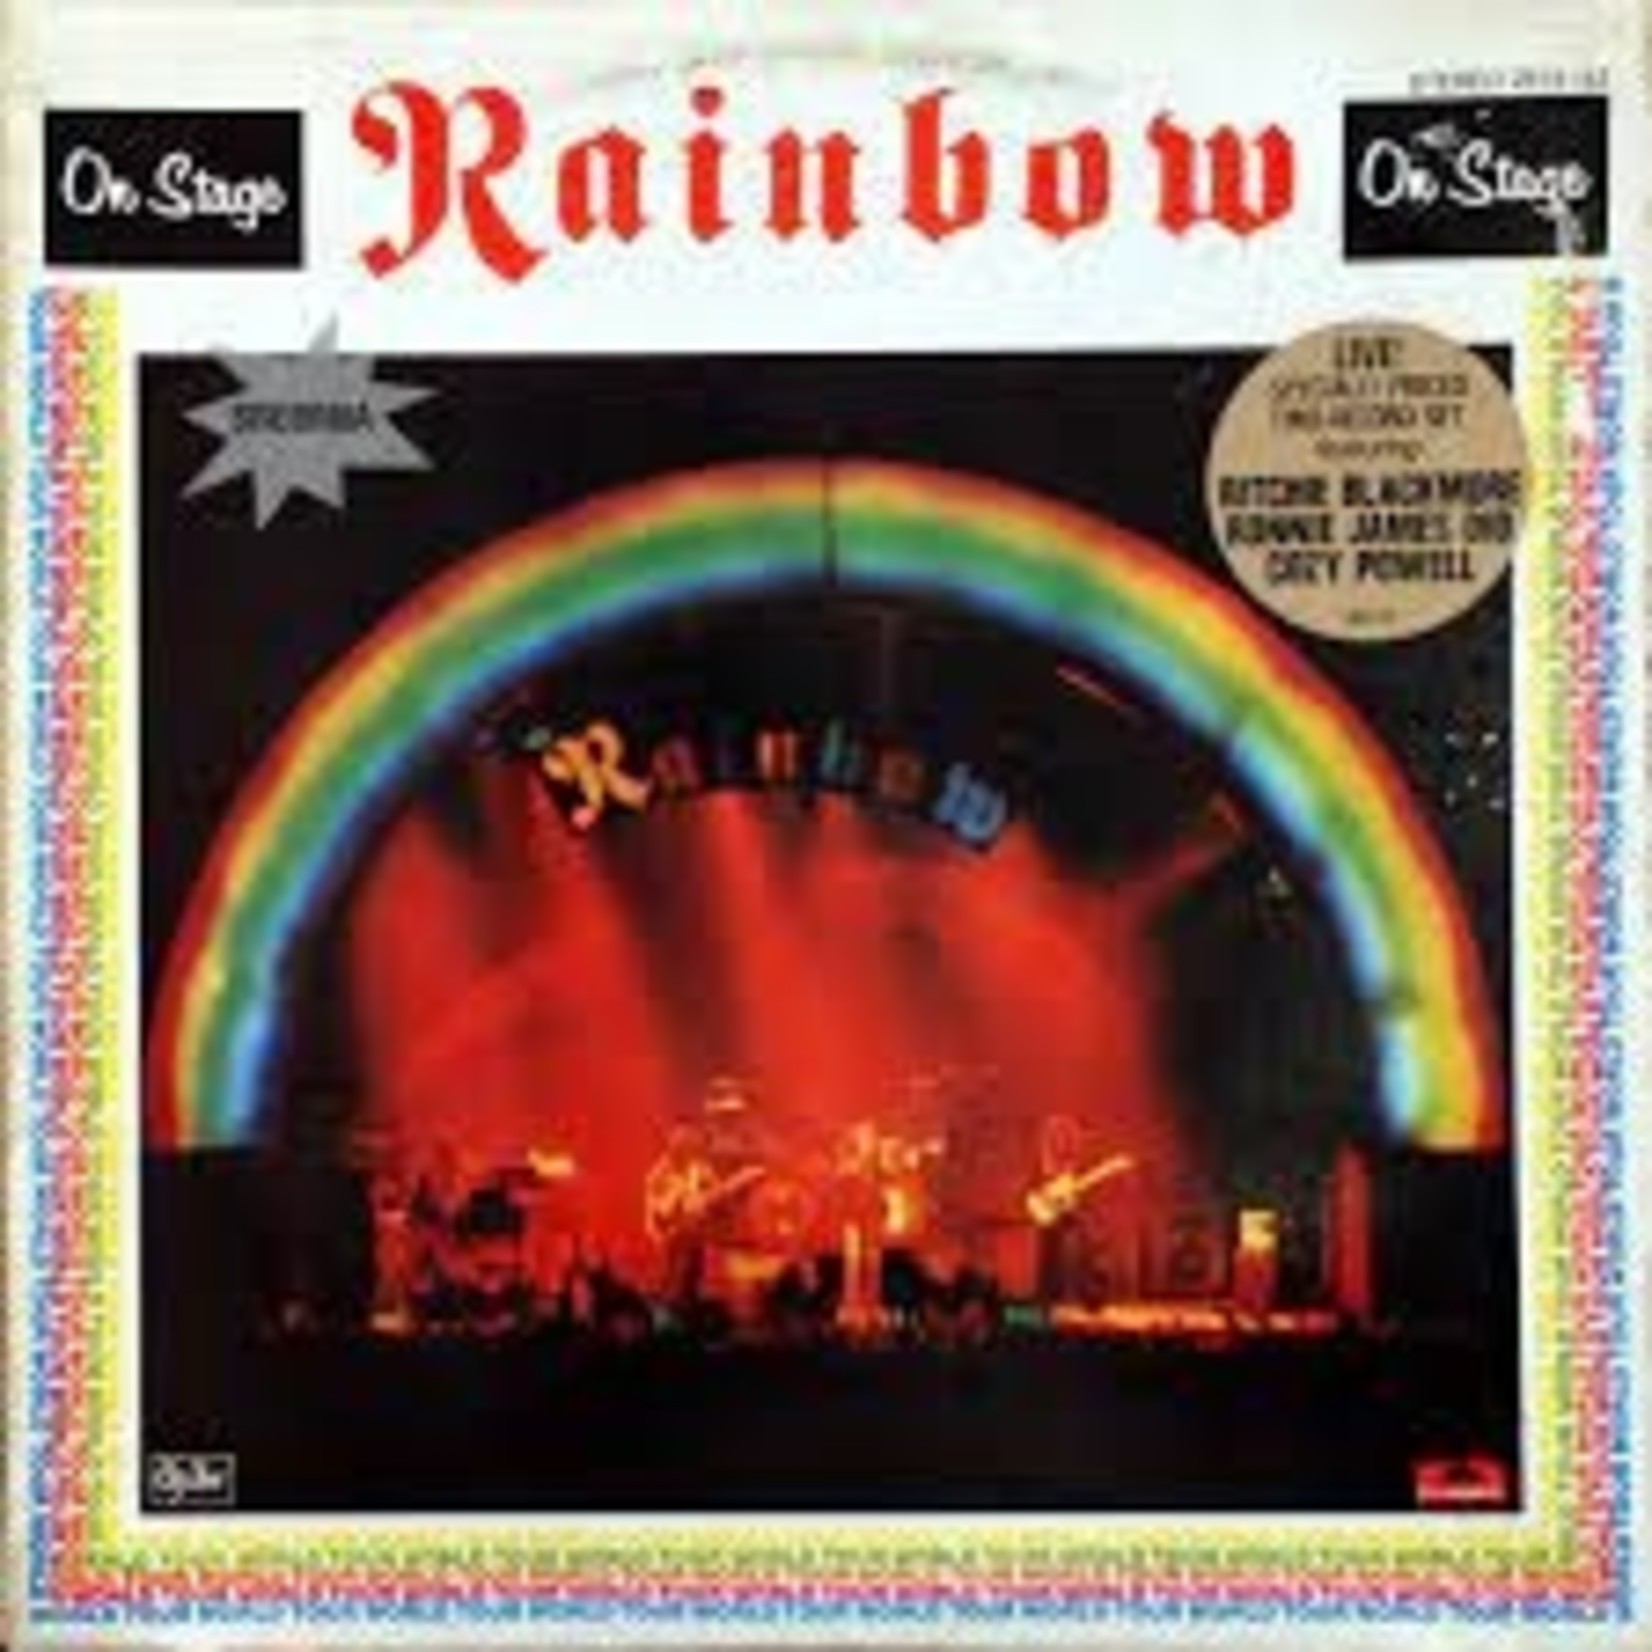 RAINBOW - on stage DLP (1977)